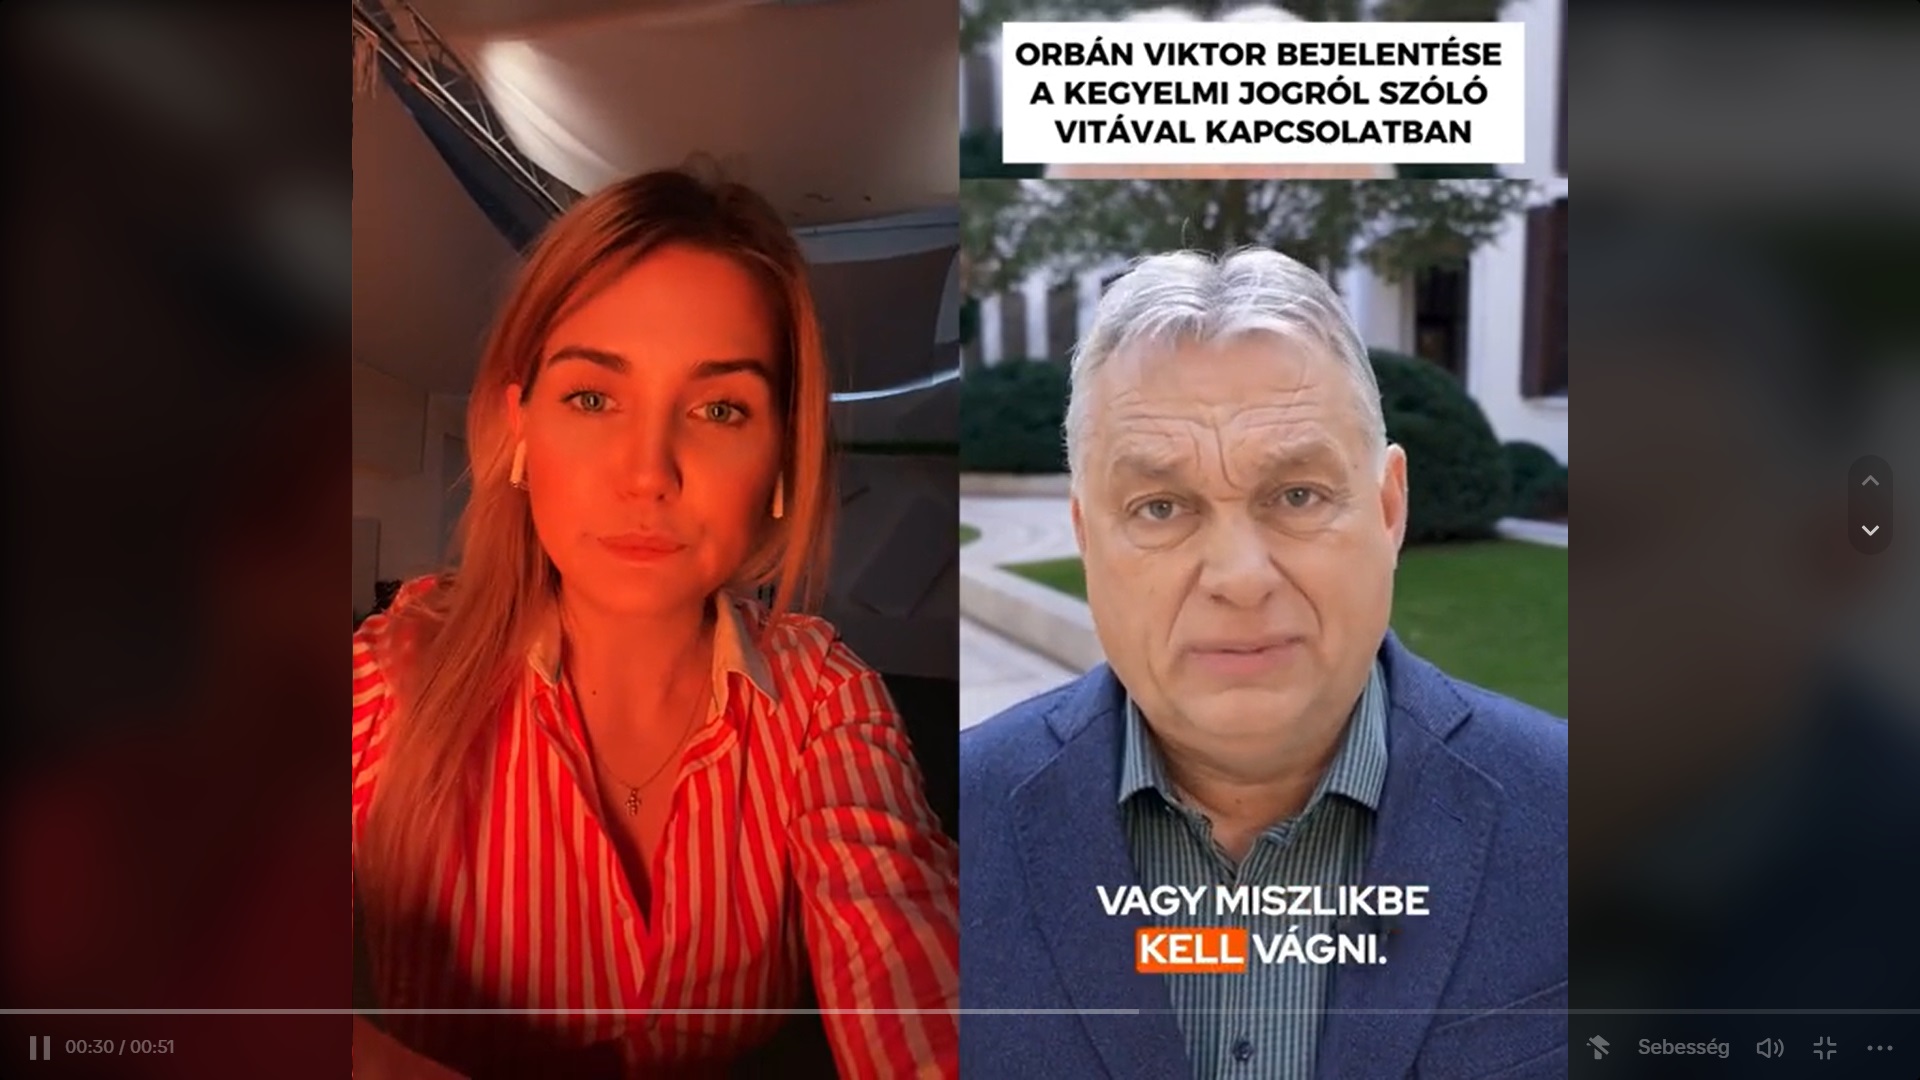 A megafonosok már azt is bemutatják, hogyan kell bólogatva helyeselni Orbán bejelentését